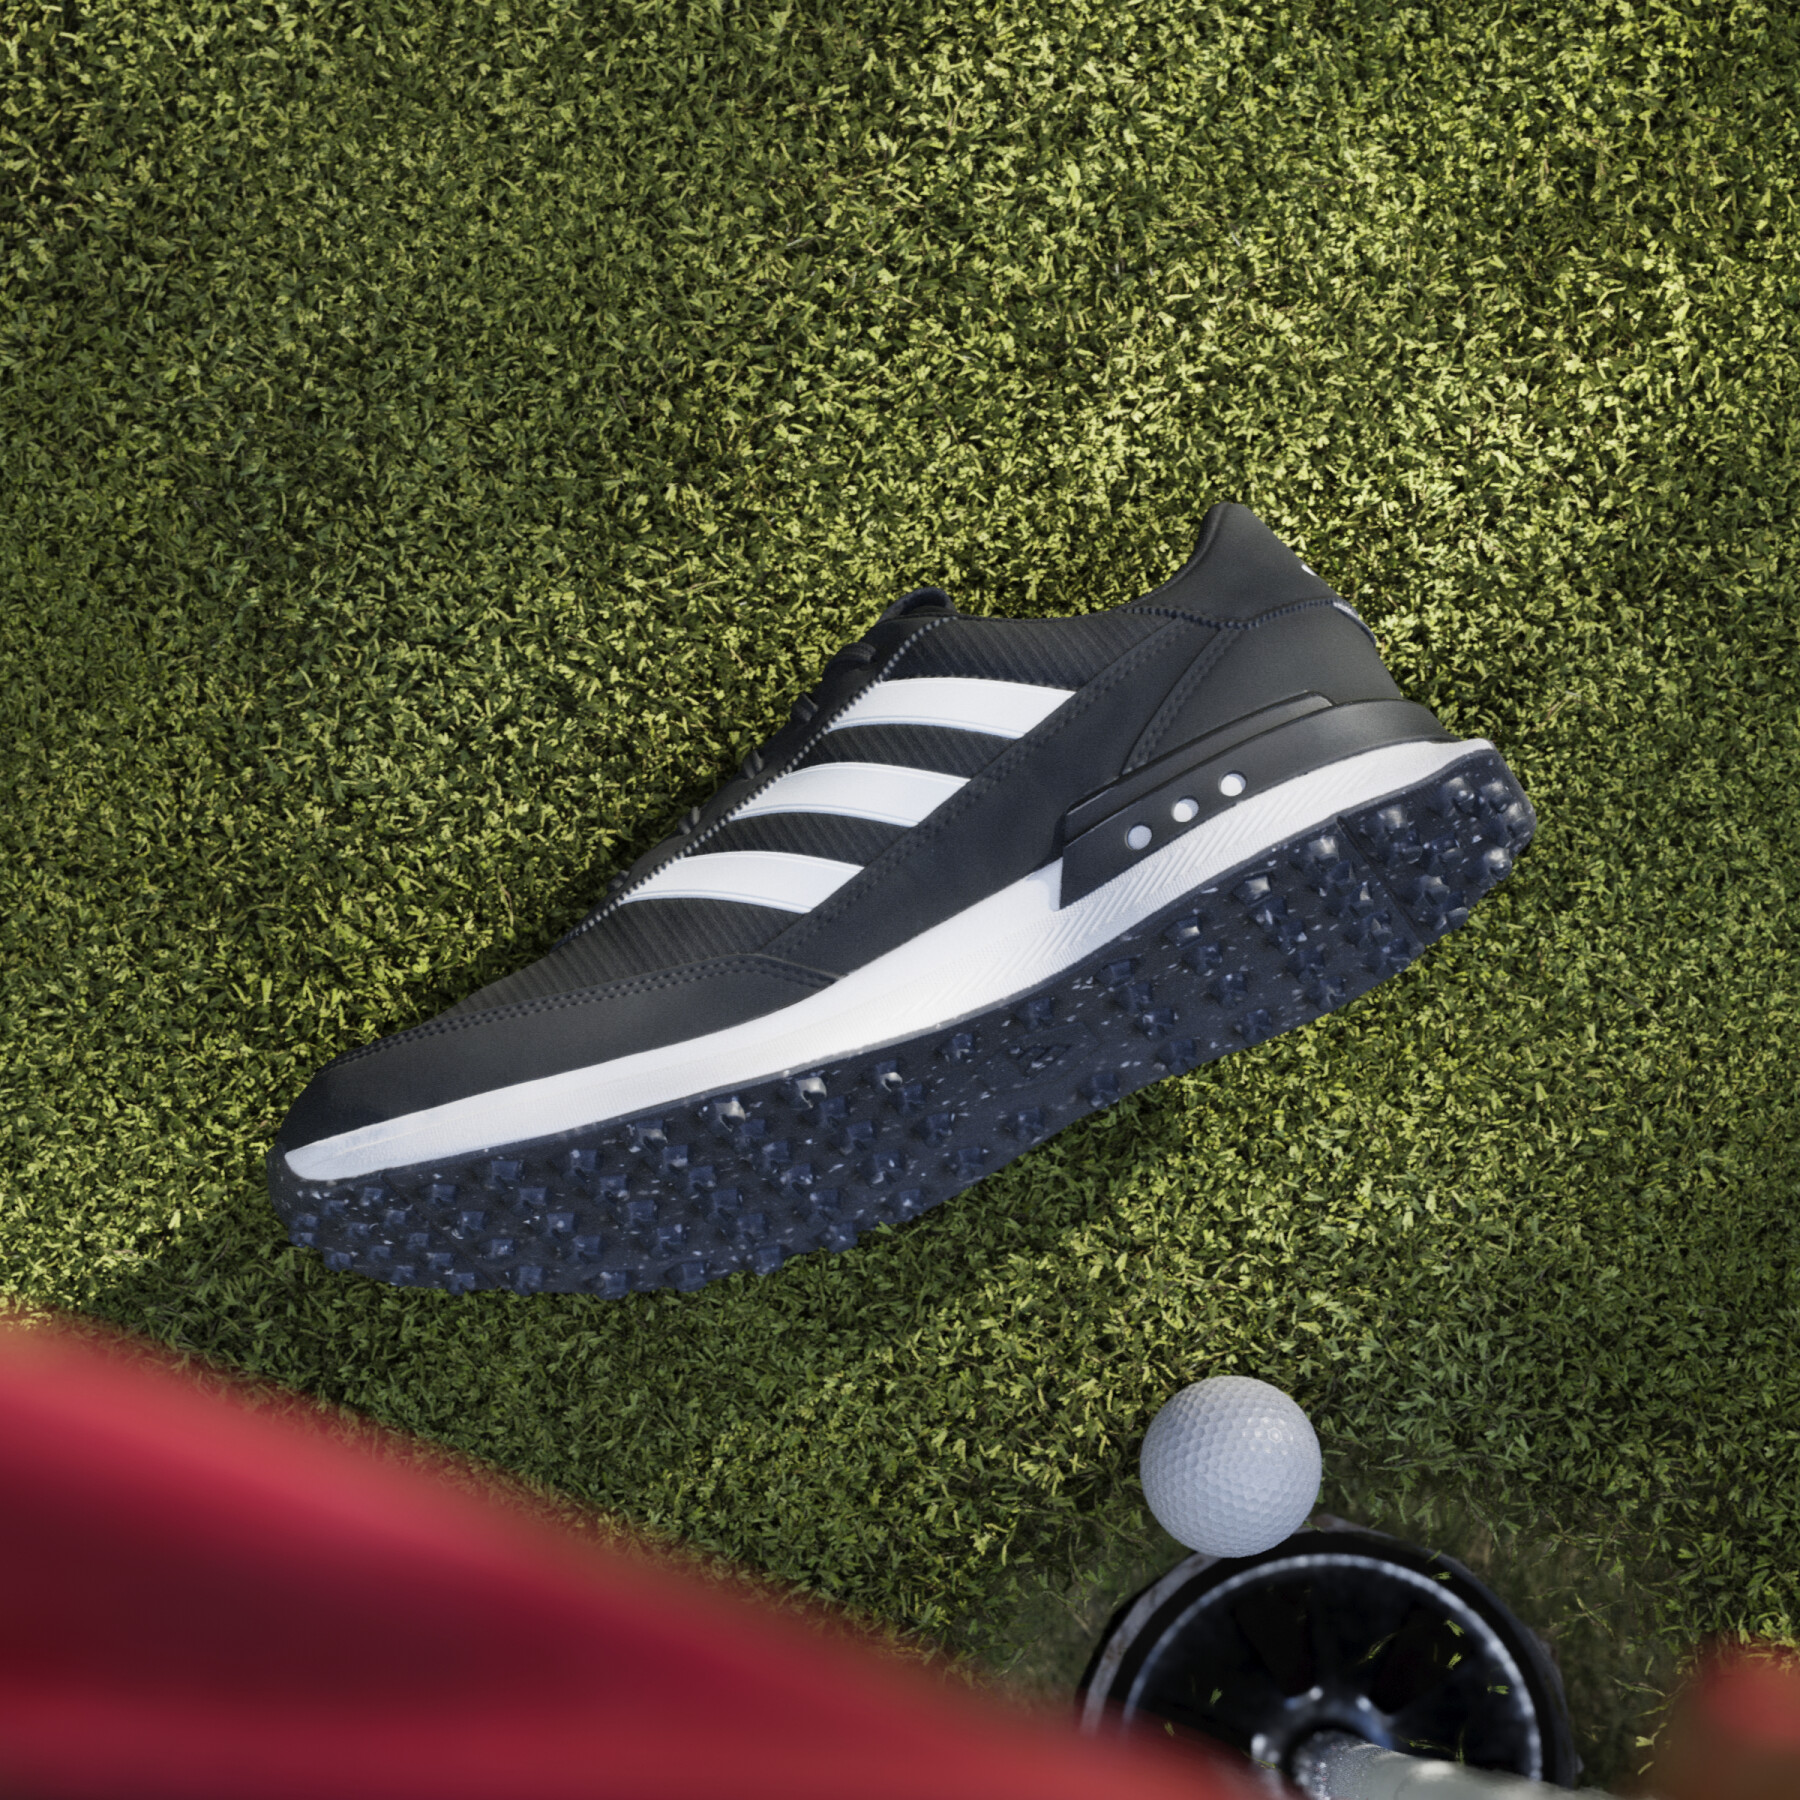 Zapatos de golf sin clavos adidas S2G 24